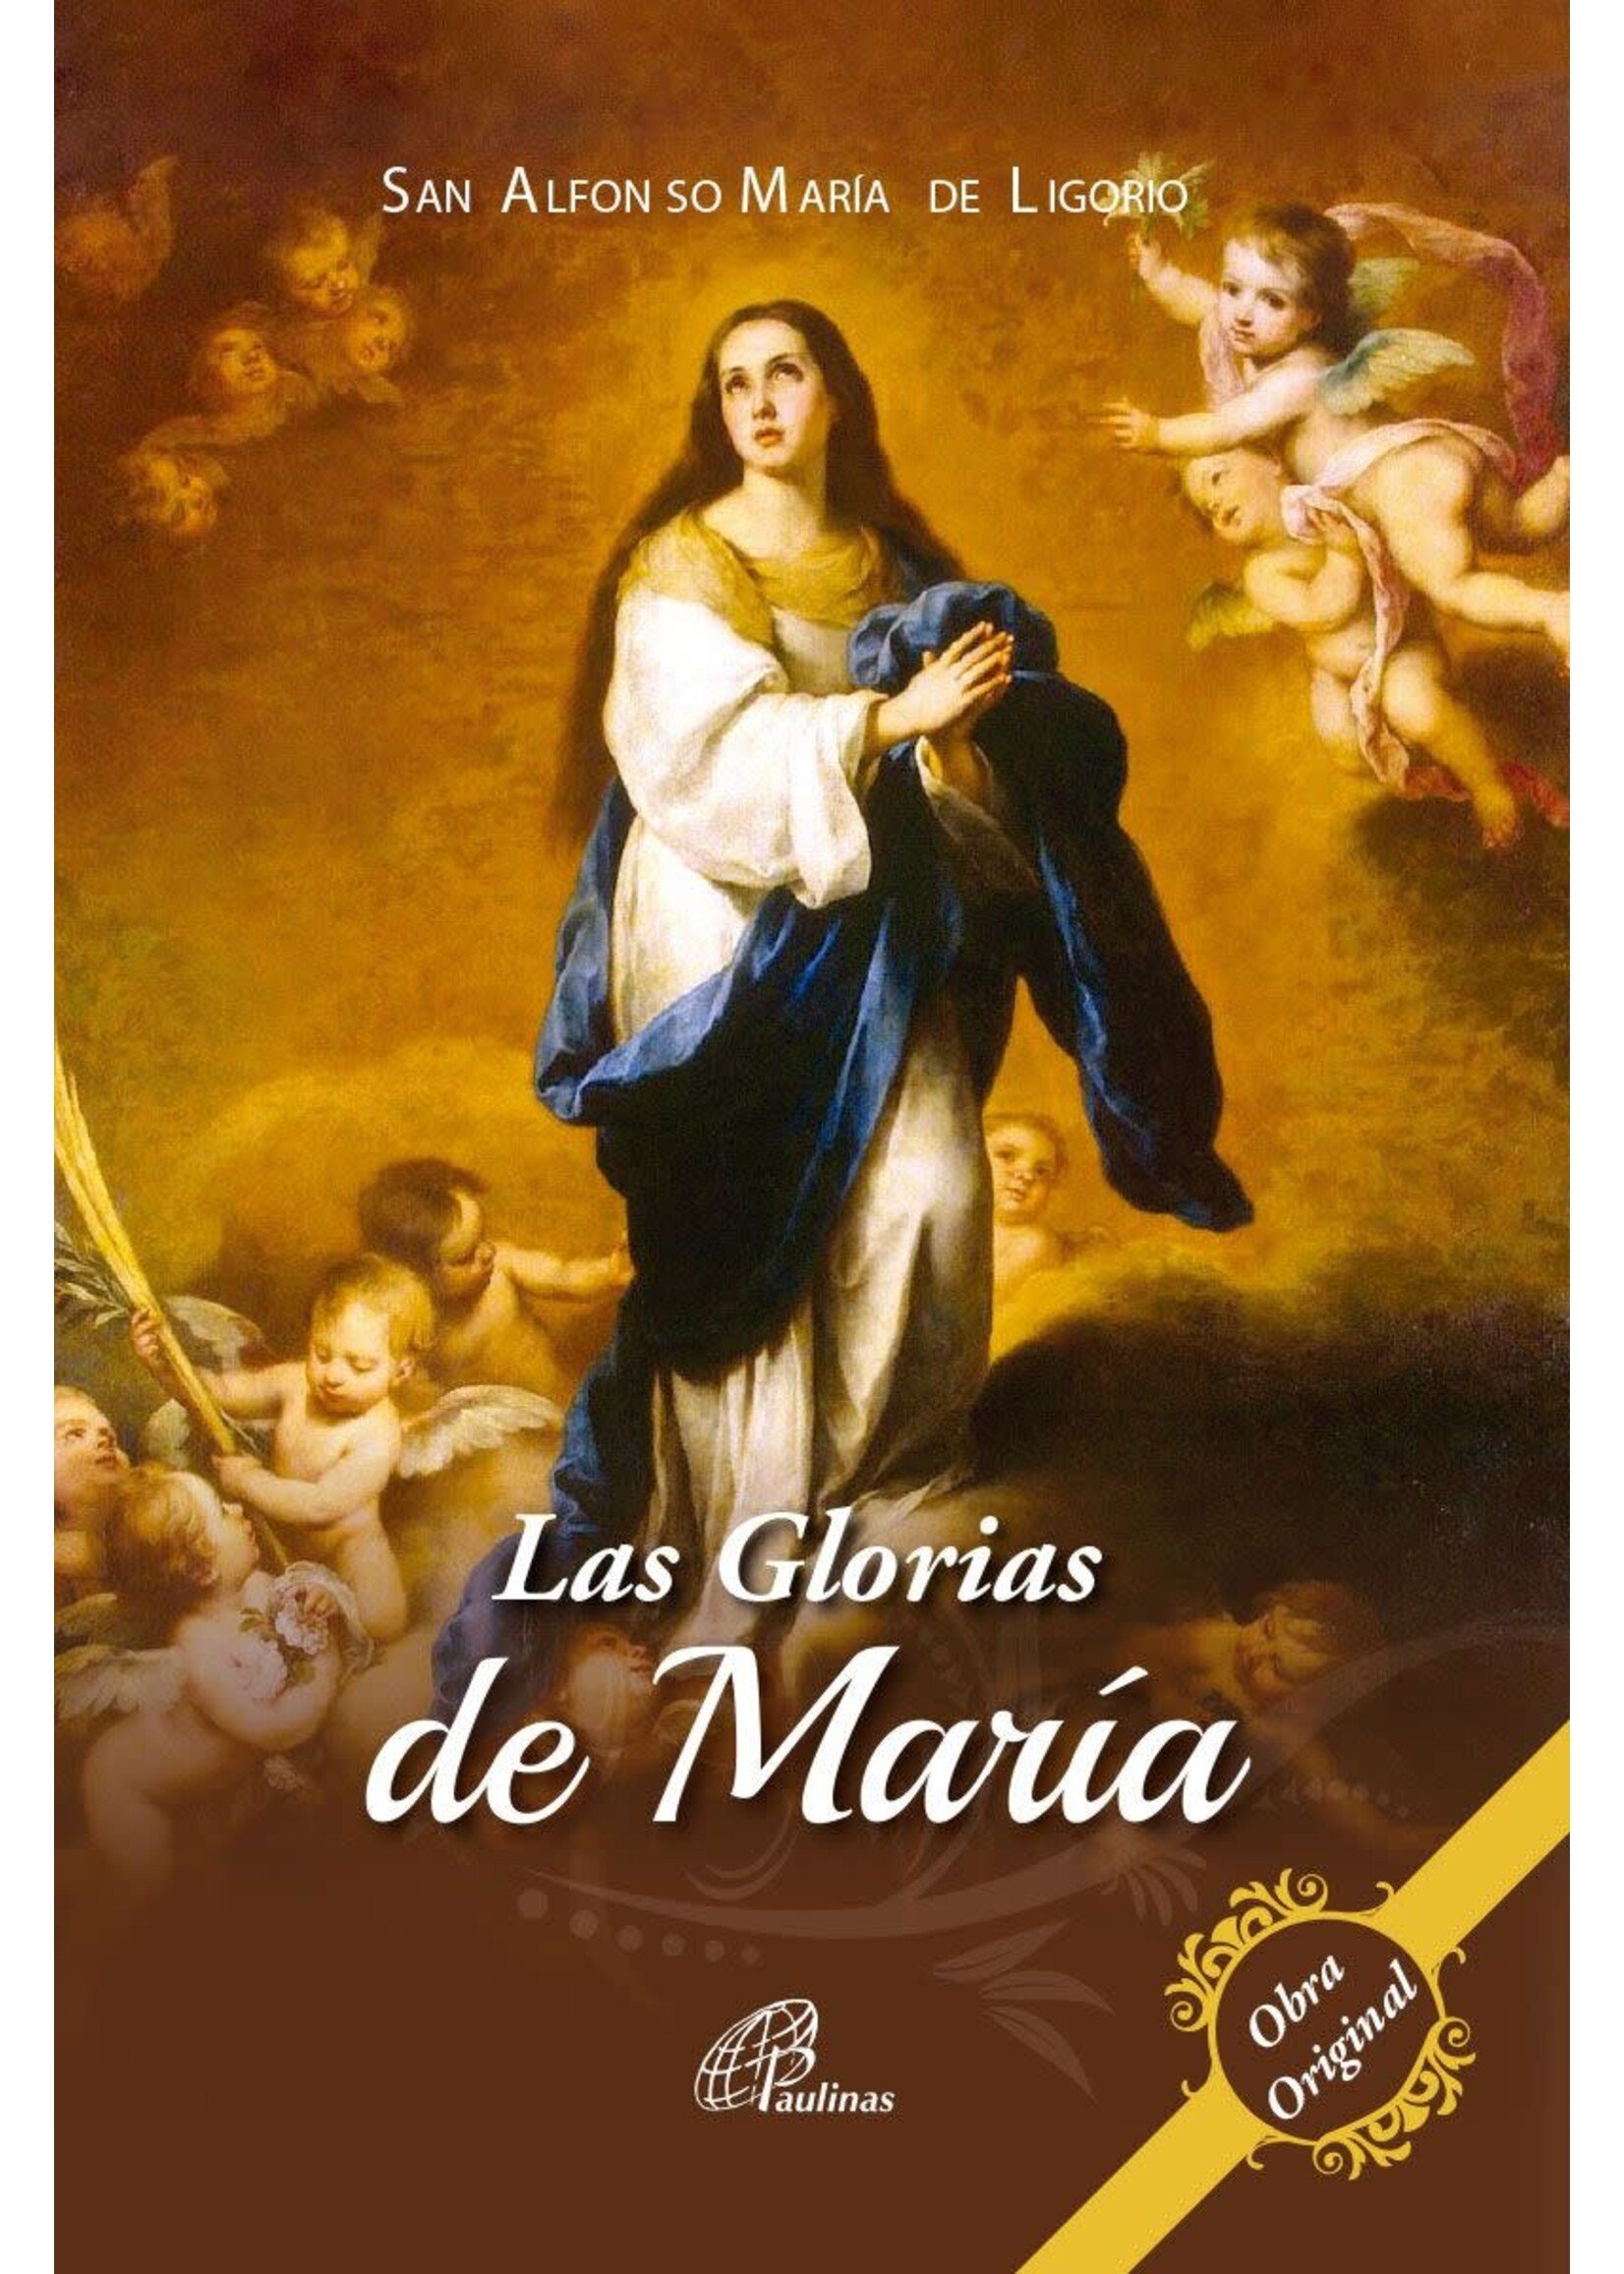 Las Glorias de Maria